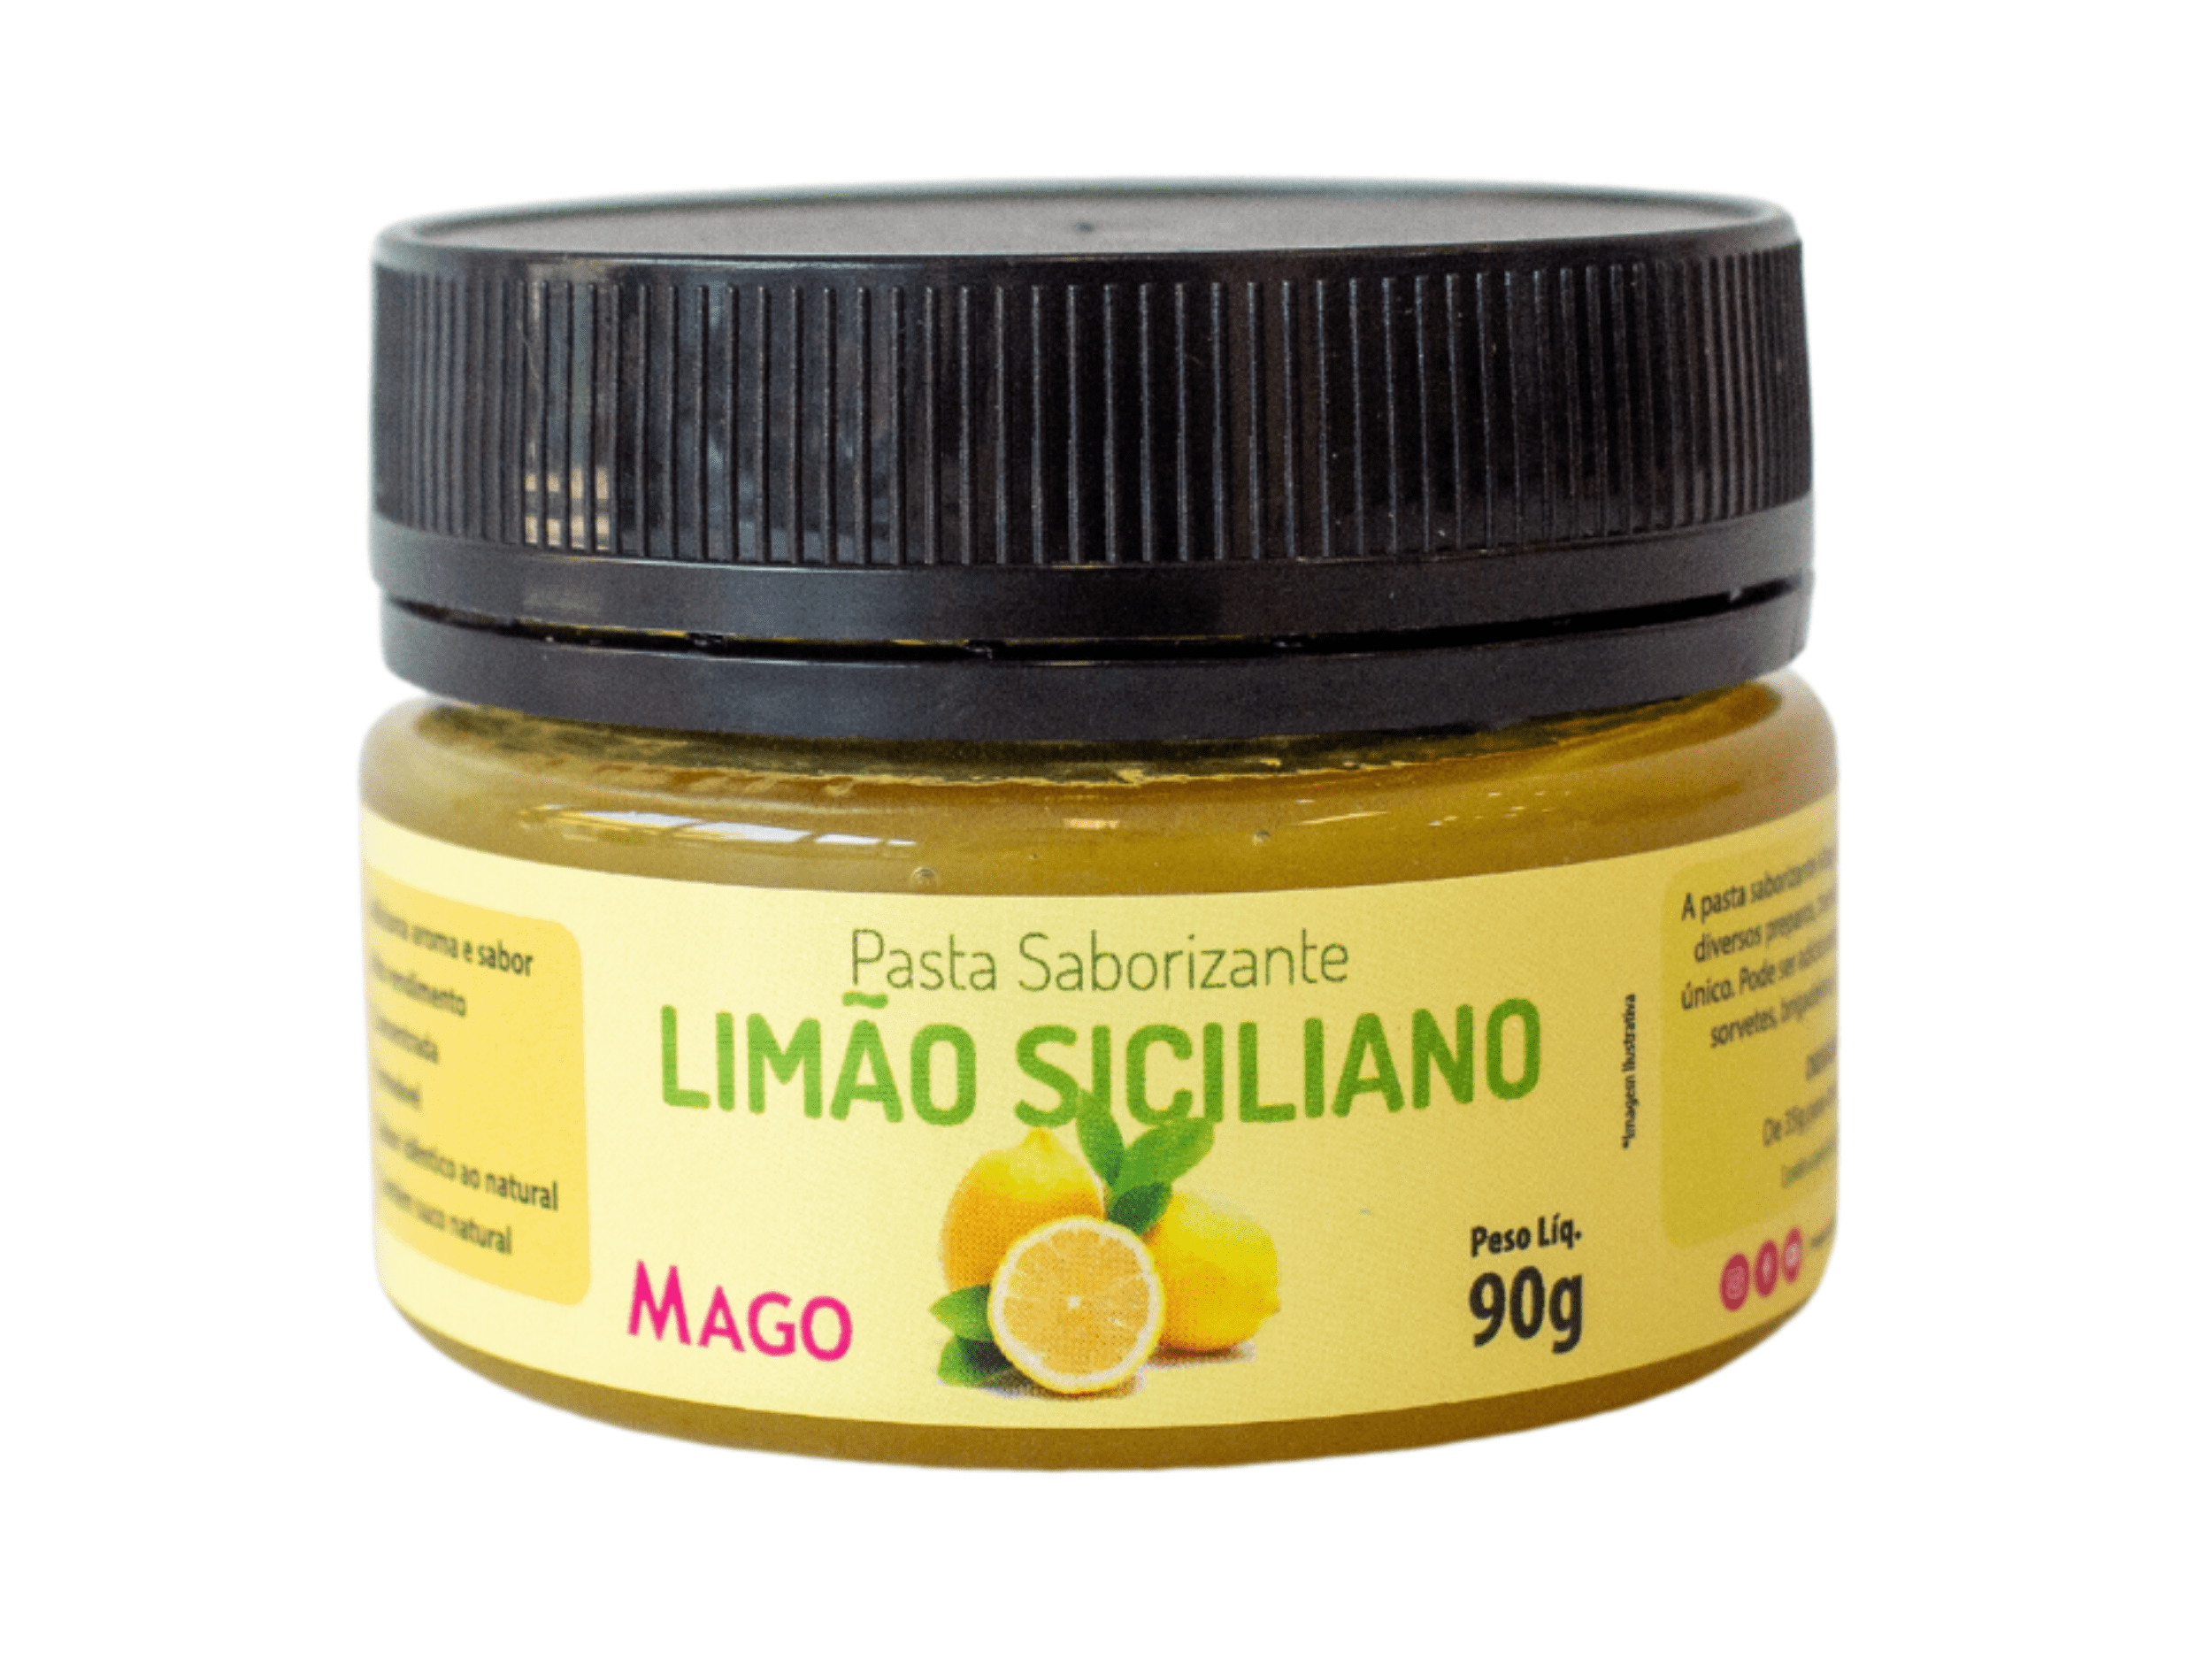 Pasta Saborizante Limão Siciliano 90g - Mago